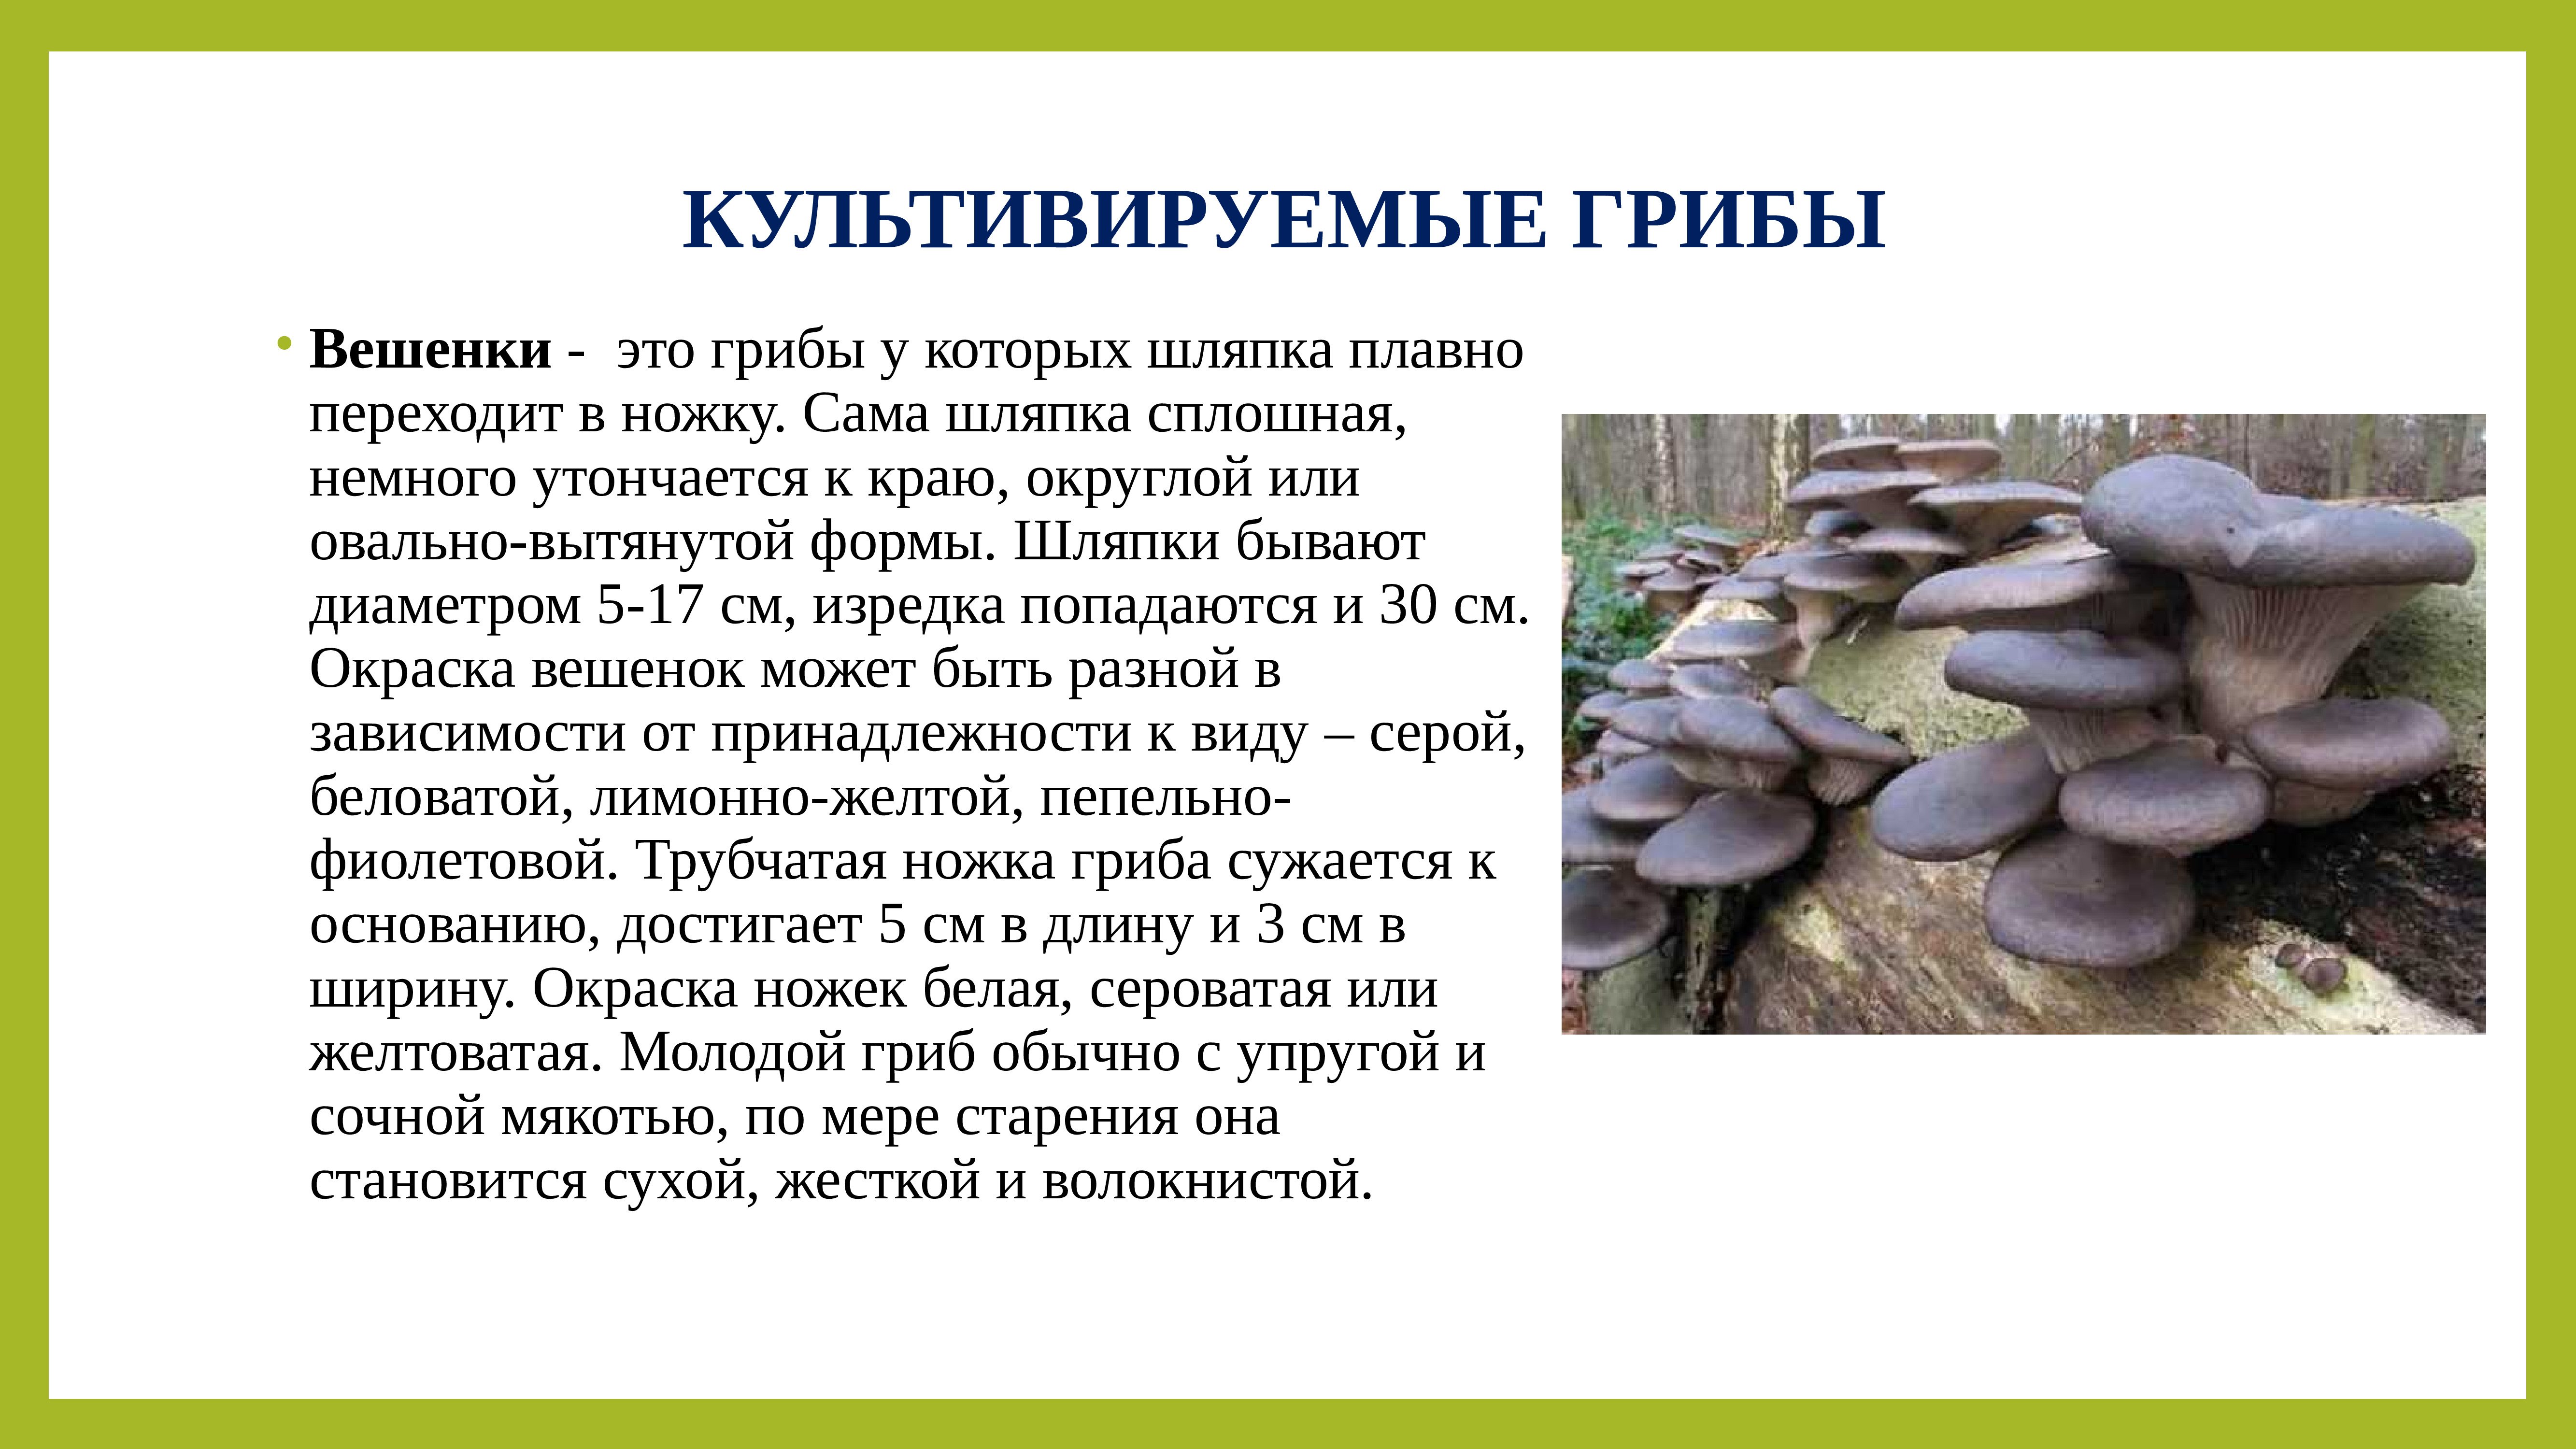 Грибы условия жизни. Культивируемые грибы вешенка. Внешний вид гриба строение. Культивируемые грибы и условия выращивания. Строение гриба вешенка.